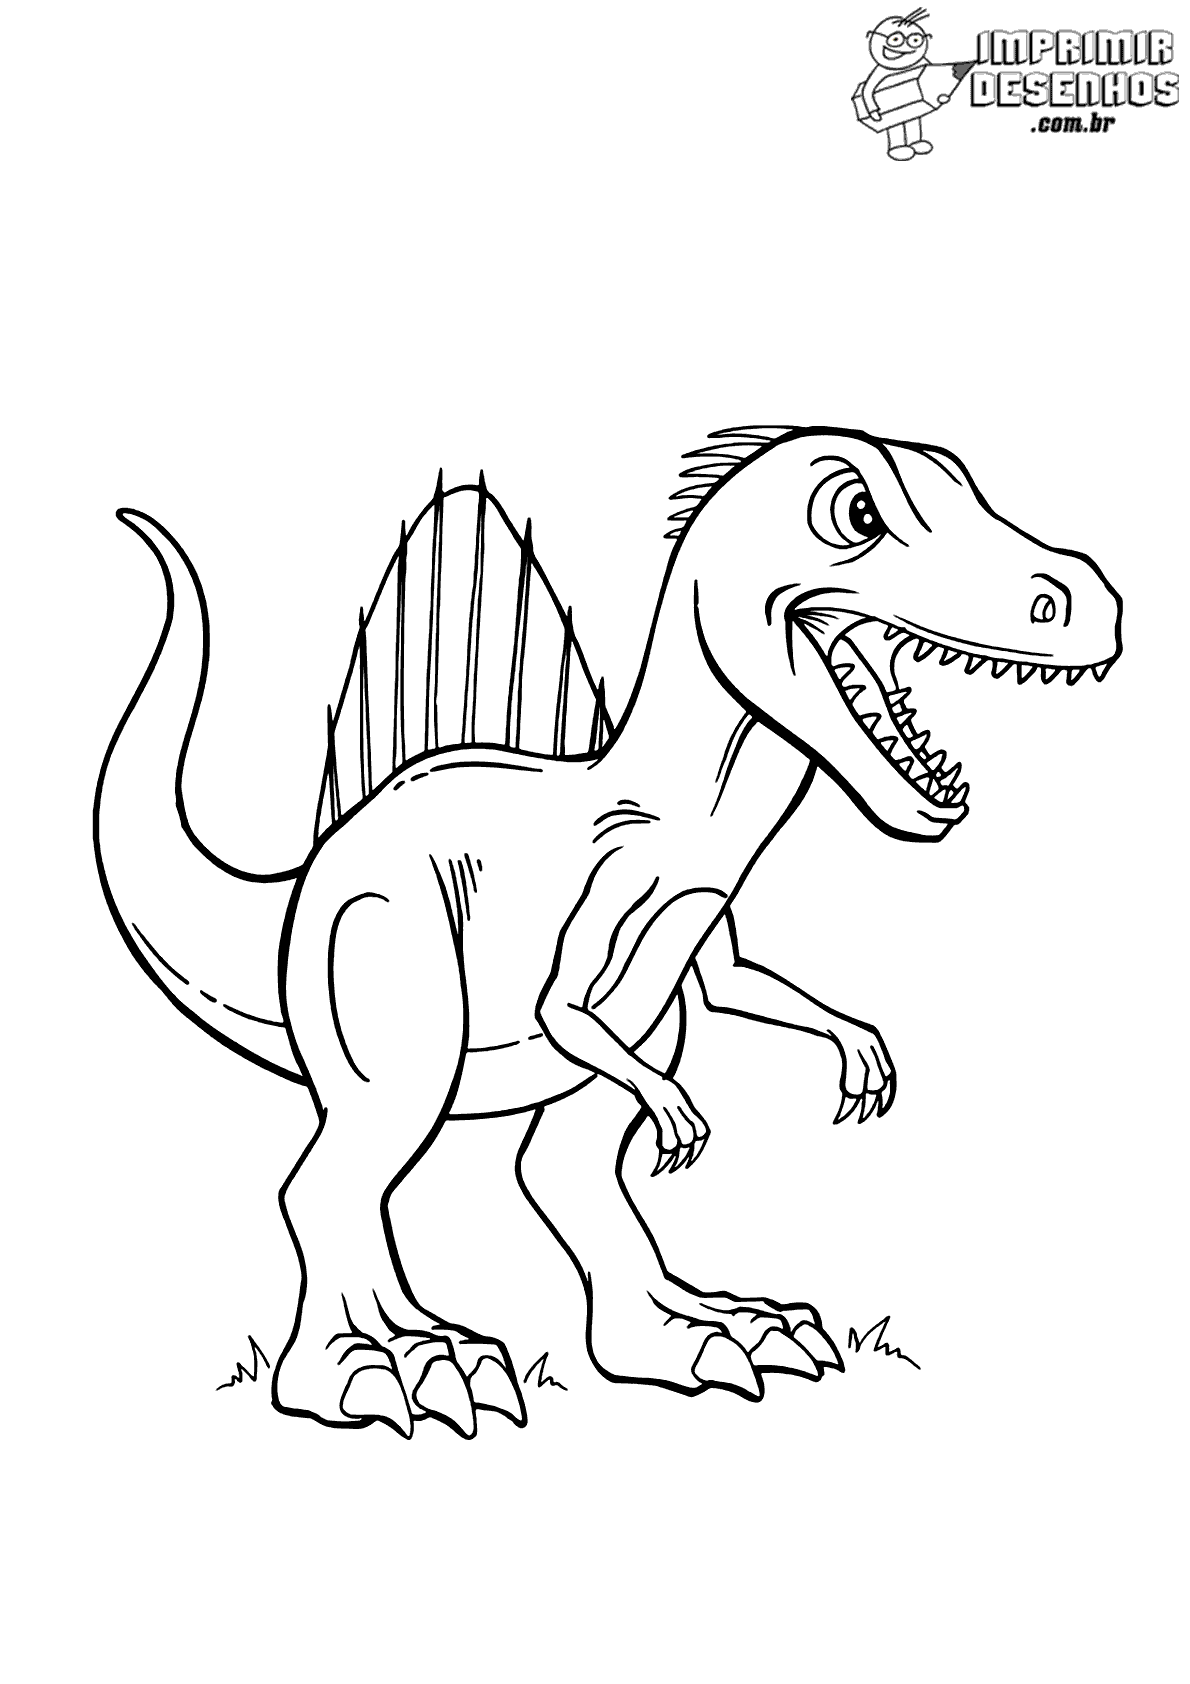 Dinossauro espinossauro para colorir - Imprimir Desenhos